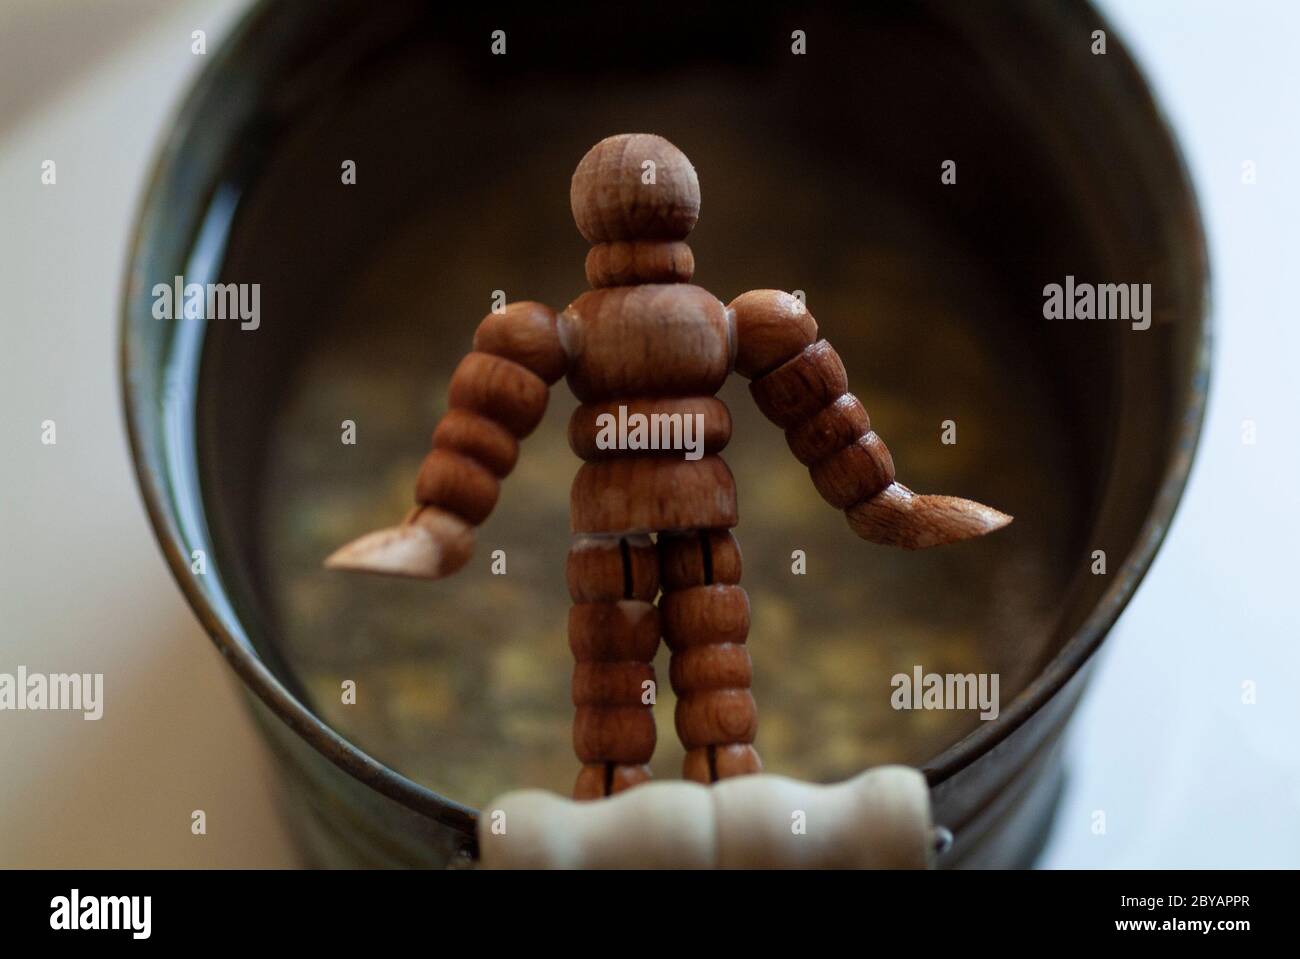 Cuento de ciencia ficcion fotografías e imágenes de alta resolución - Alamy